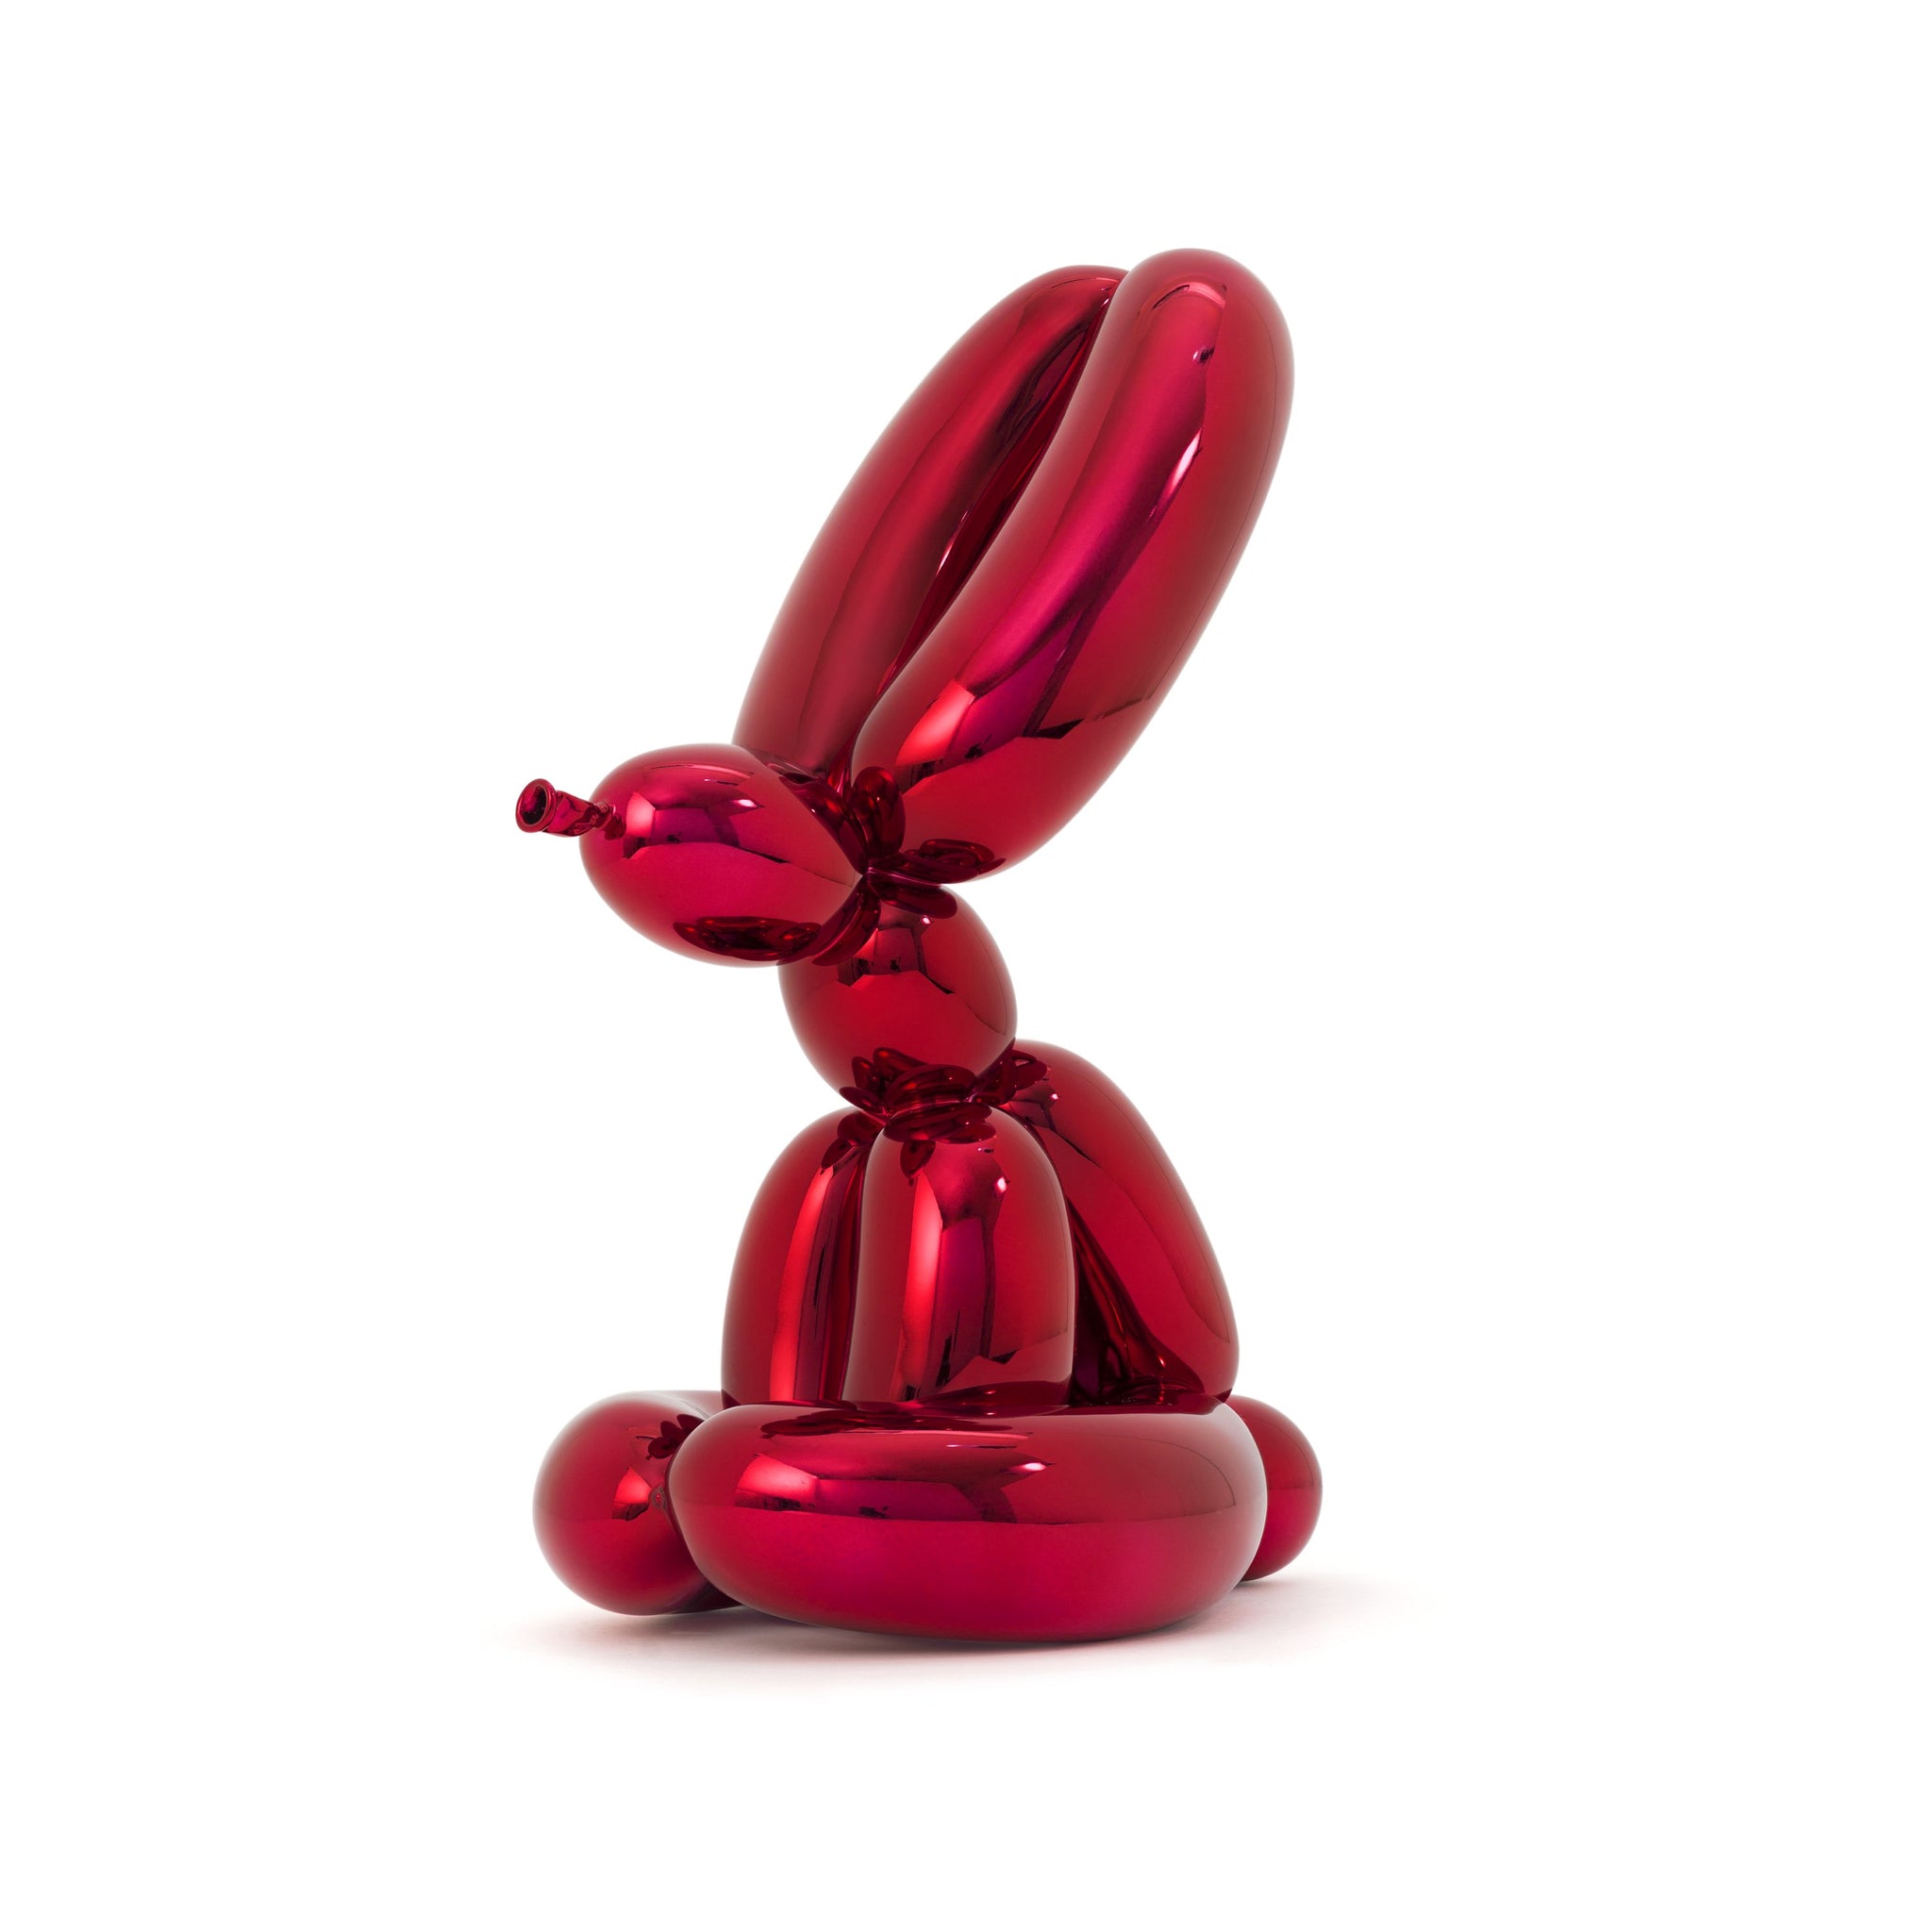 Jeff Koons: Balloon Rabbit (Red) edition